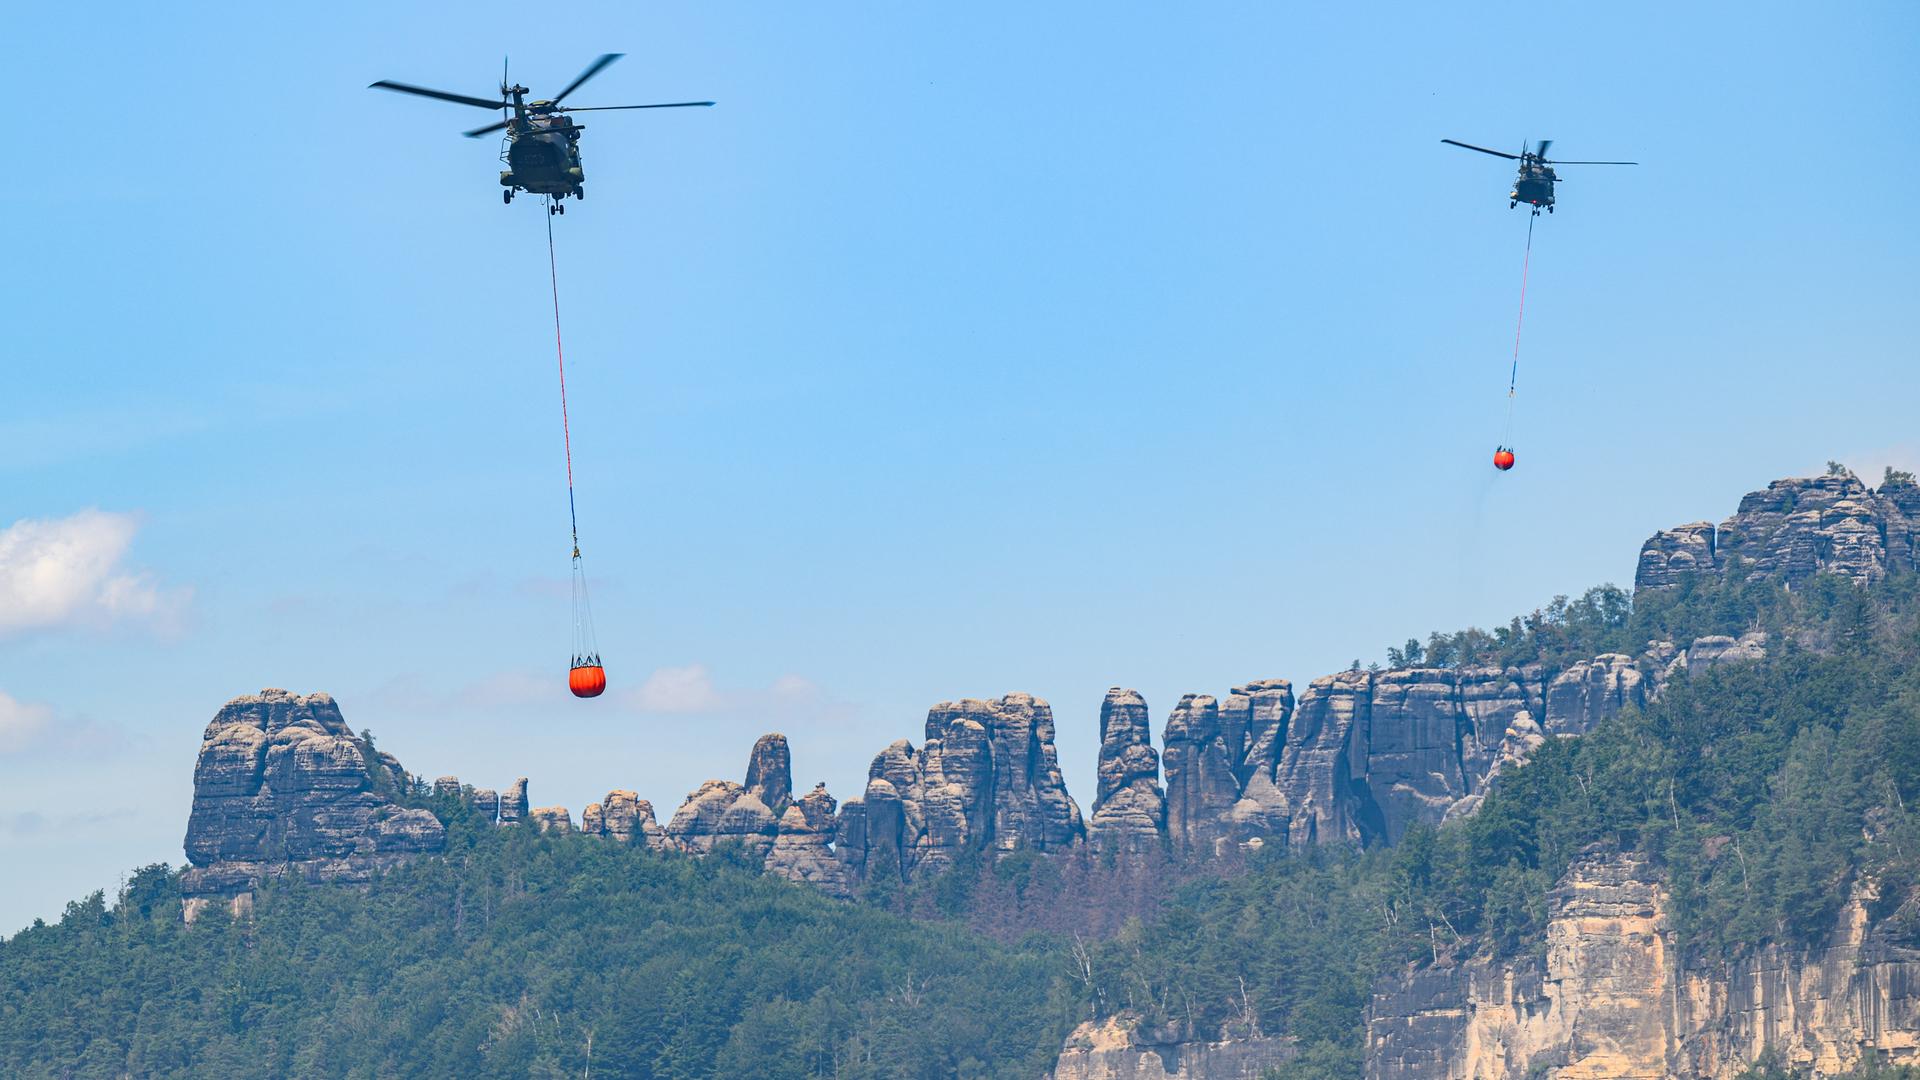 Hubschrauber der Bundeswehr fliegen am 28. Juli mit Löschwasser-Außenlastbehältern um einen Waldbrand im Nationalpark Sächsische Schweiz zu löschen.